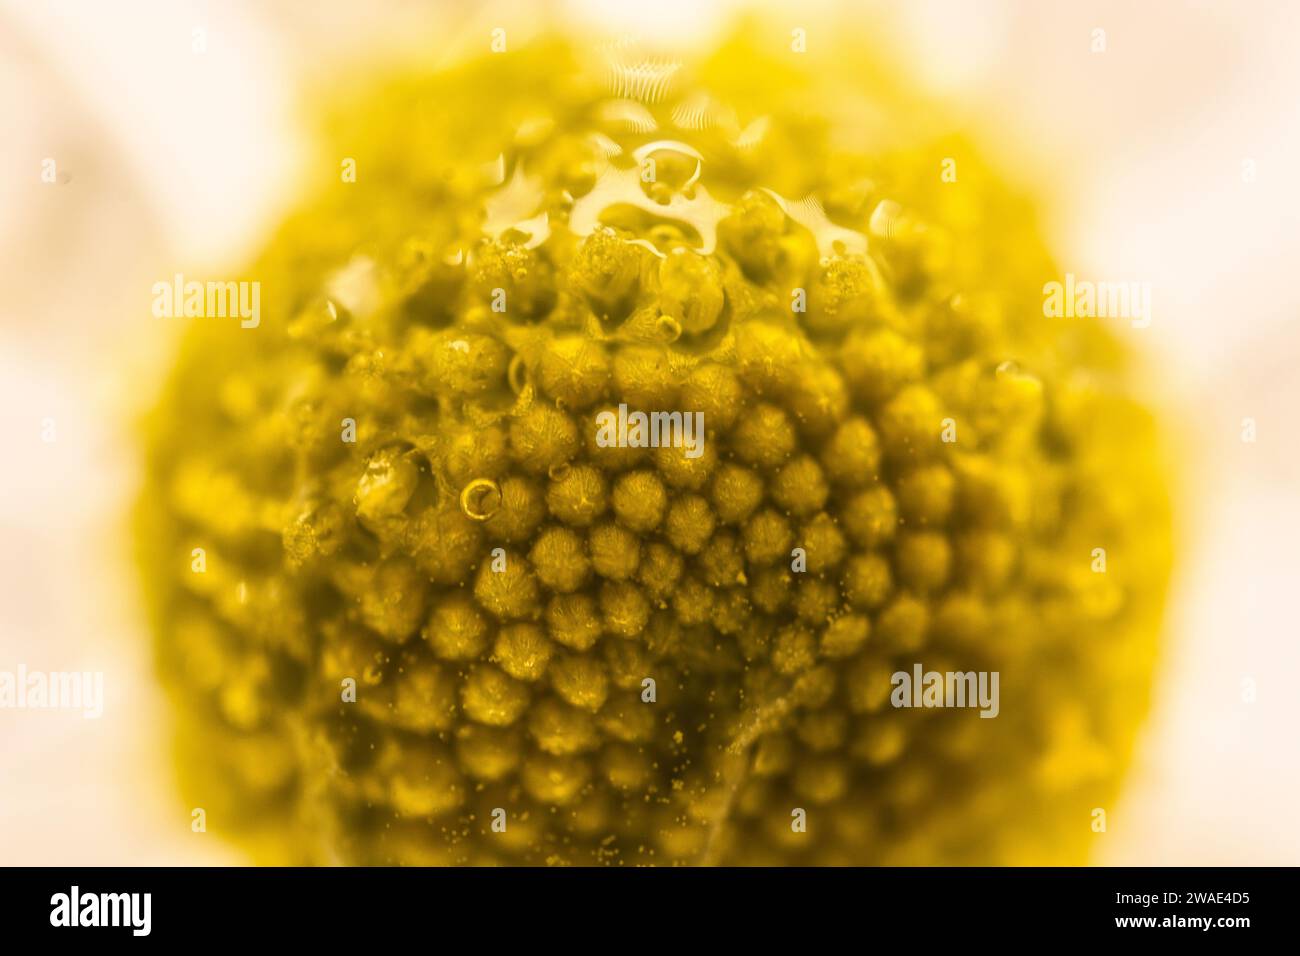 Eine mikroskopische Aufnahme eines mittleren Teils einer Kamillenblüte, die in Wasser getaucht ist Stockfoto